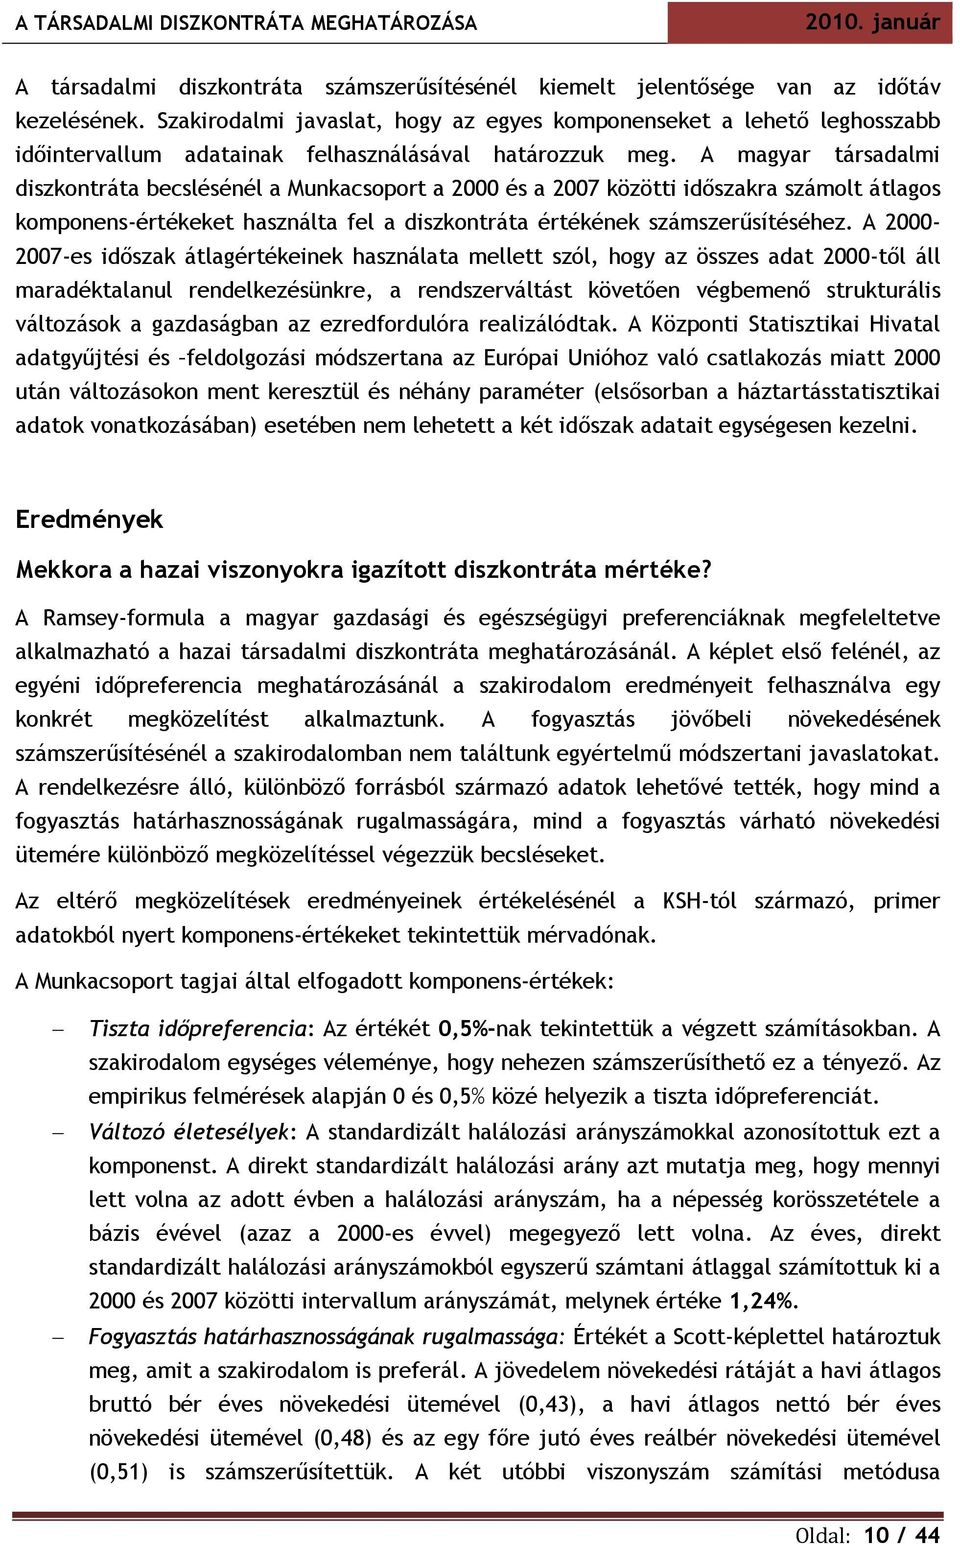 A magyar társadalmi diszkontráta becslésénél a Munkacsoport a 2000 és a 2007 közötti időszakra számolt átlagos komponens-értékeket használta fel a diszkontráta értékének számszerűsítéséhez.